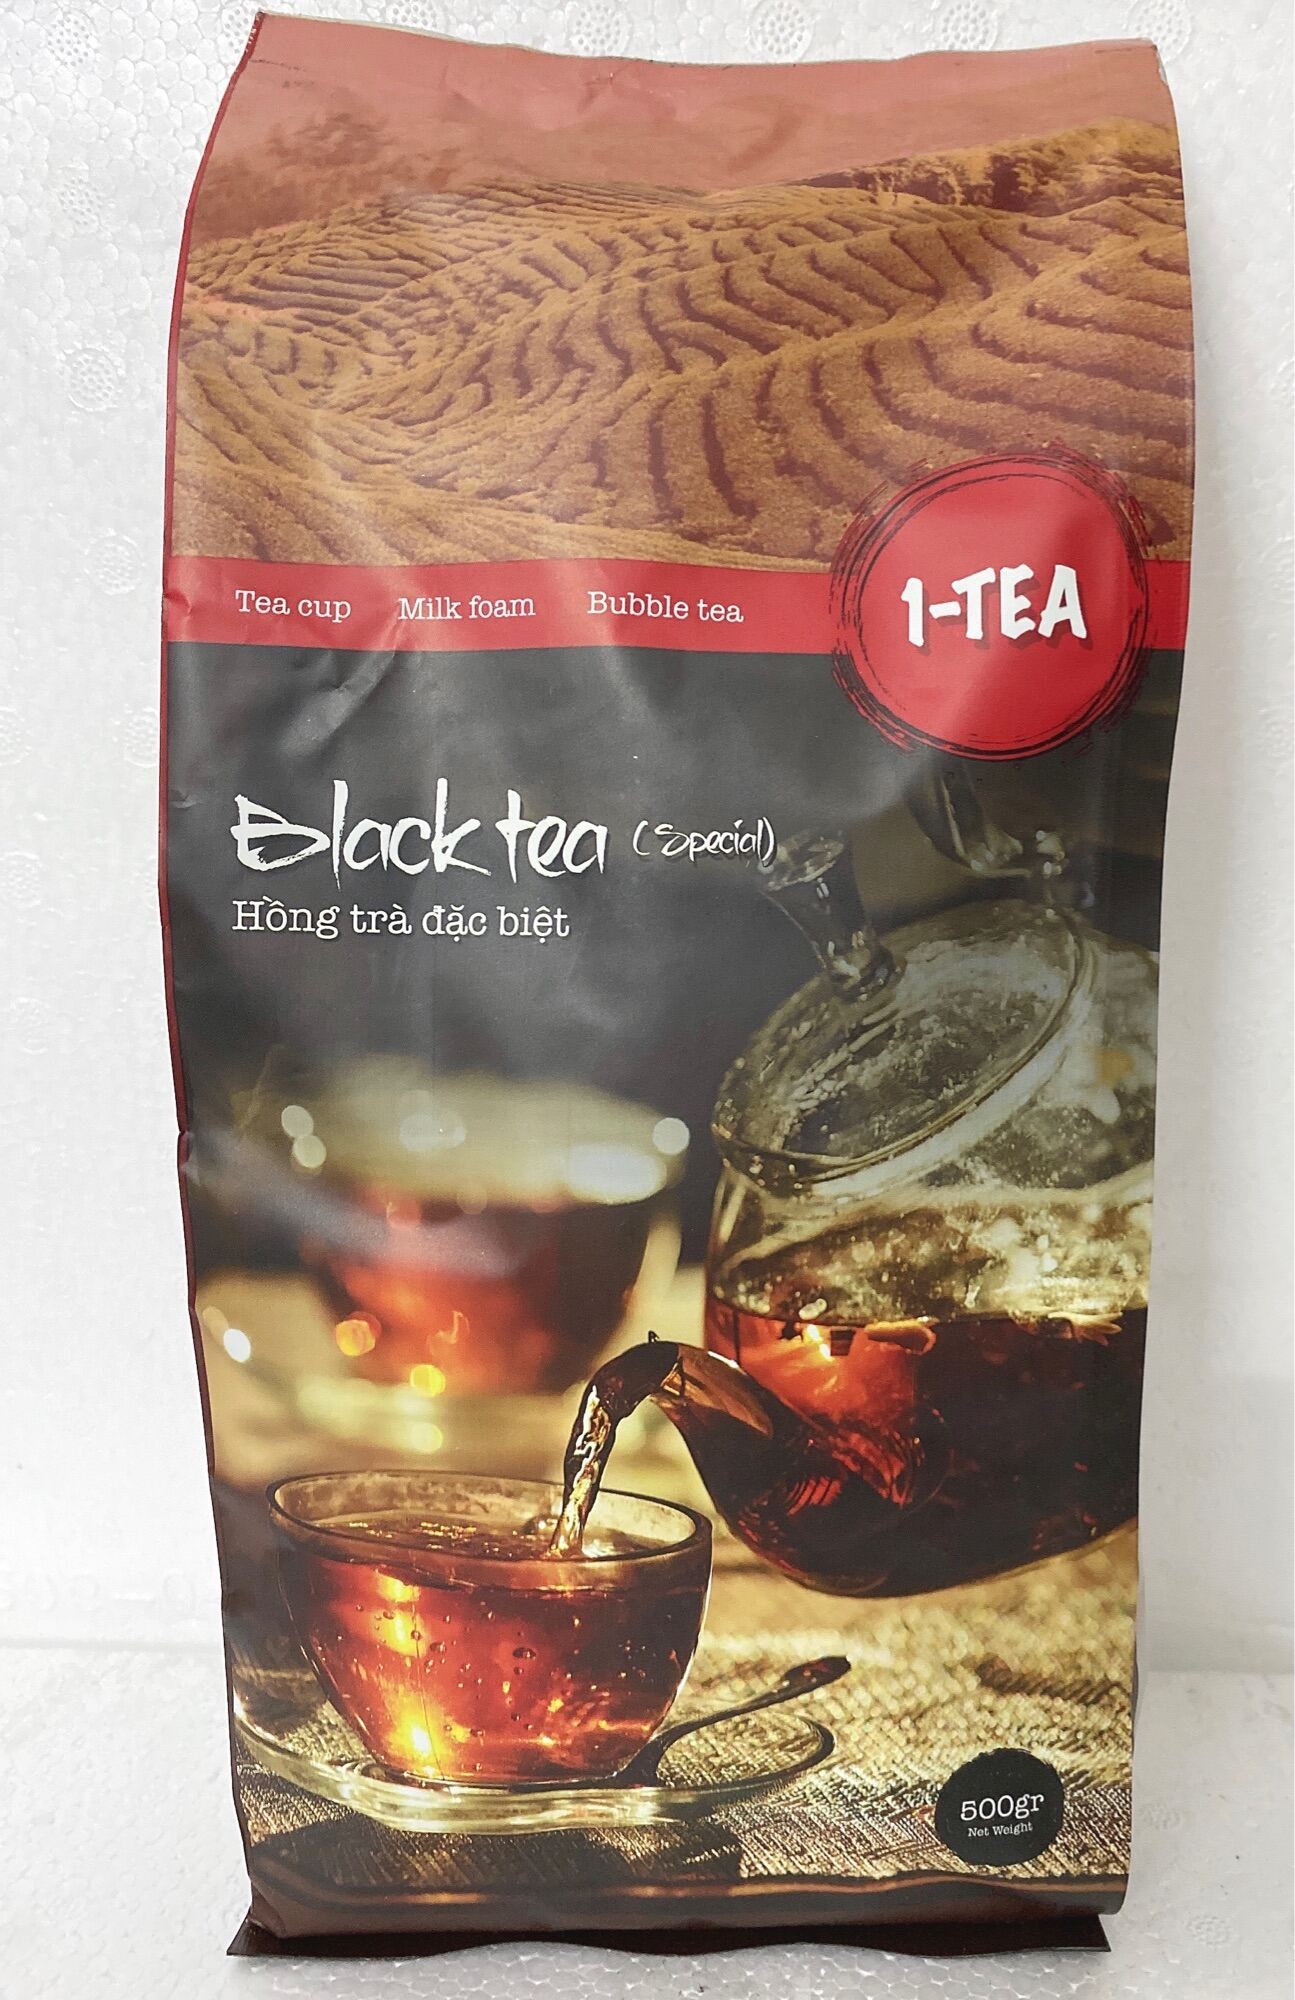 Hồng trà đặc biệt 1-tea 500g